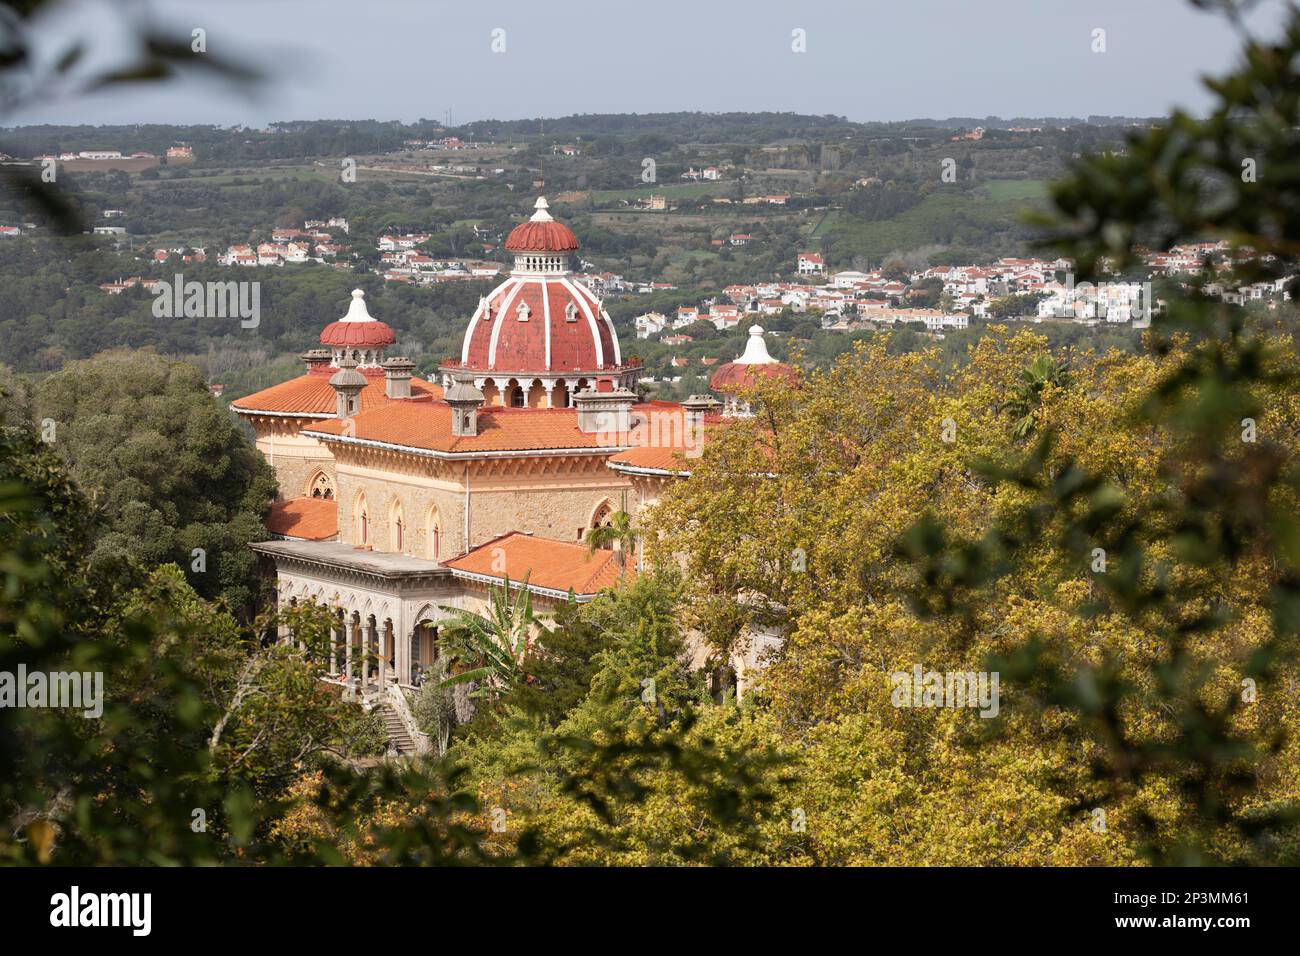 Monserrate Palace situado en el parque botánico, Sintra, Región de Lisboa, Portugal, Europa Foto de stock